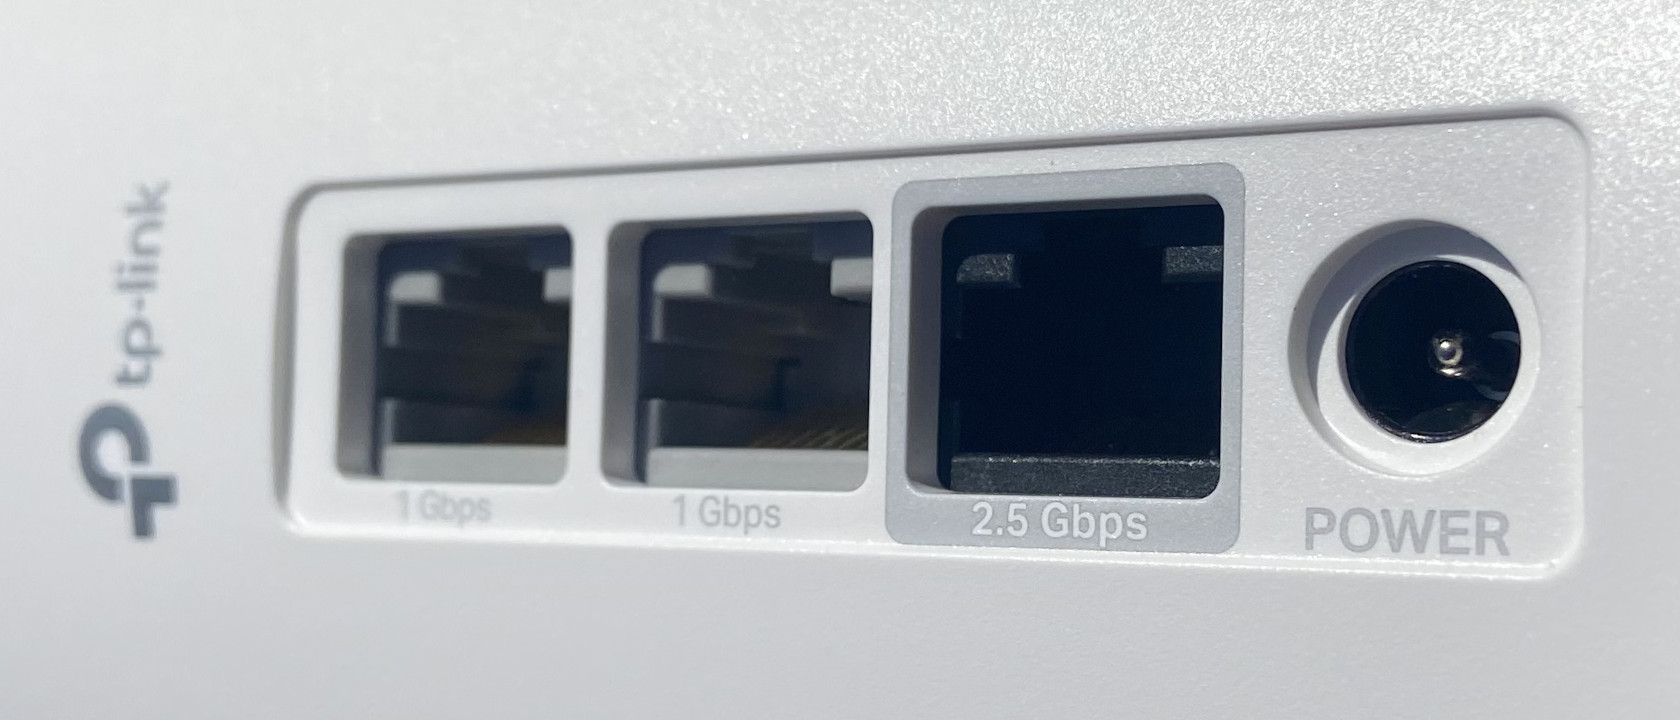  Jednotka TP-Link Deco XE75 Pro ponúka celkom 3 konektory LAN (1x 2,5GbE, 2x GbE port), ktoré vám sprostredkujú bleskurýchle káblové pripojenie pre kritické aplikácie.